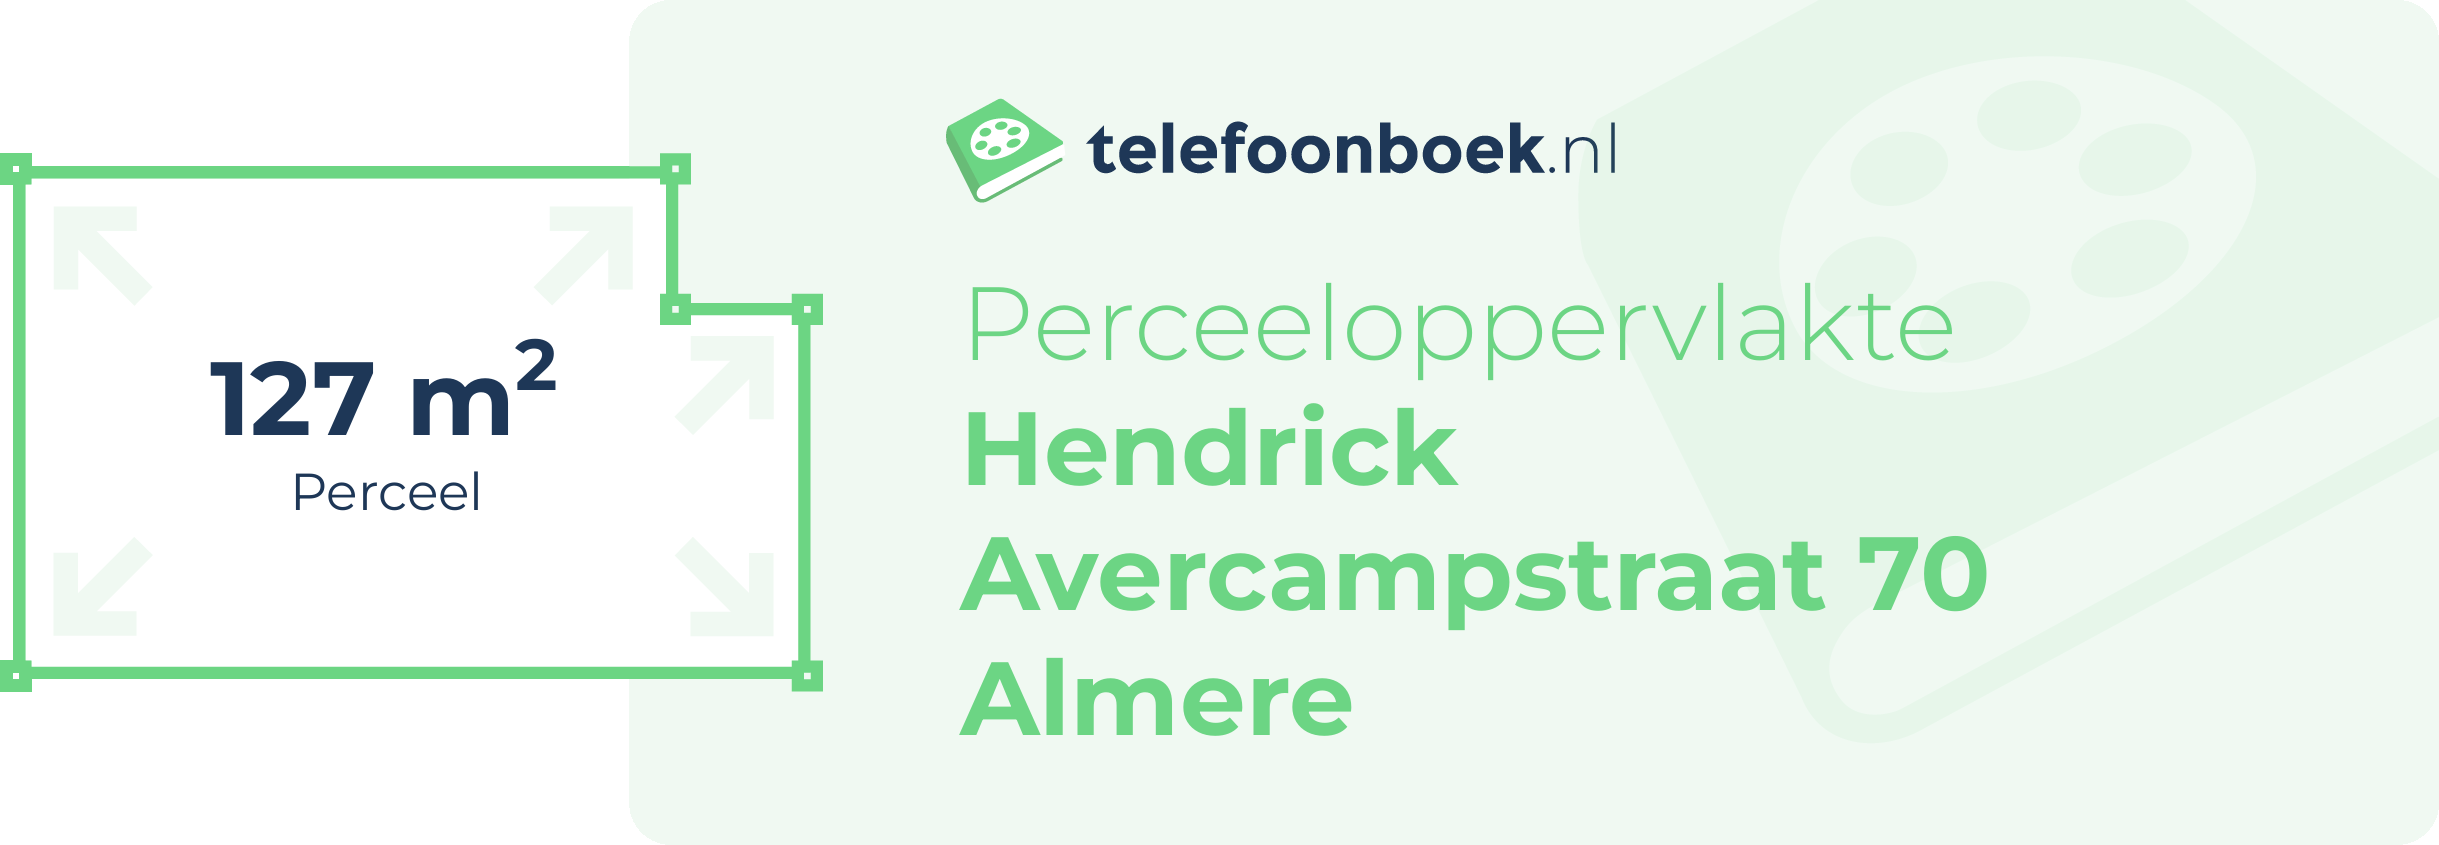 Perceeloppervlakte Hendrick Avercampstraat 70 Almere